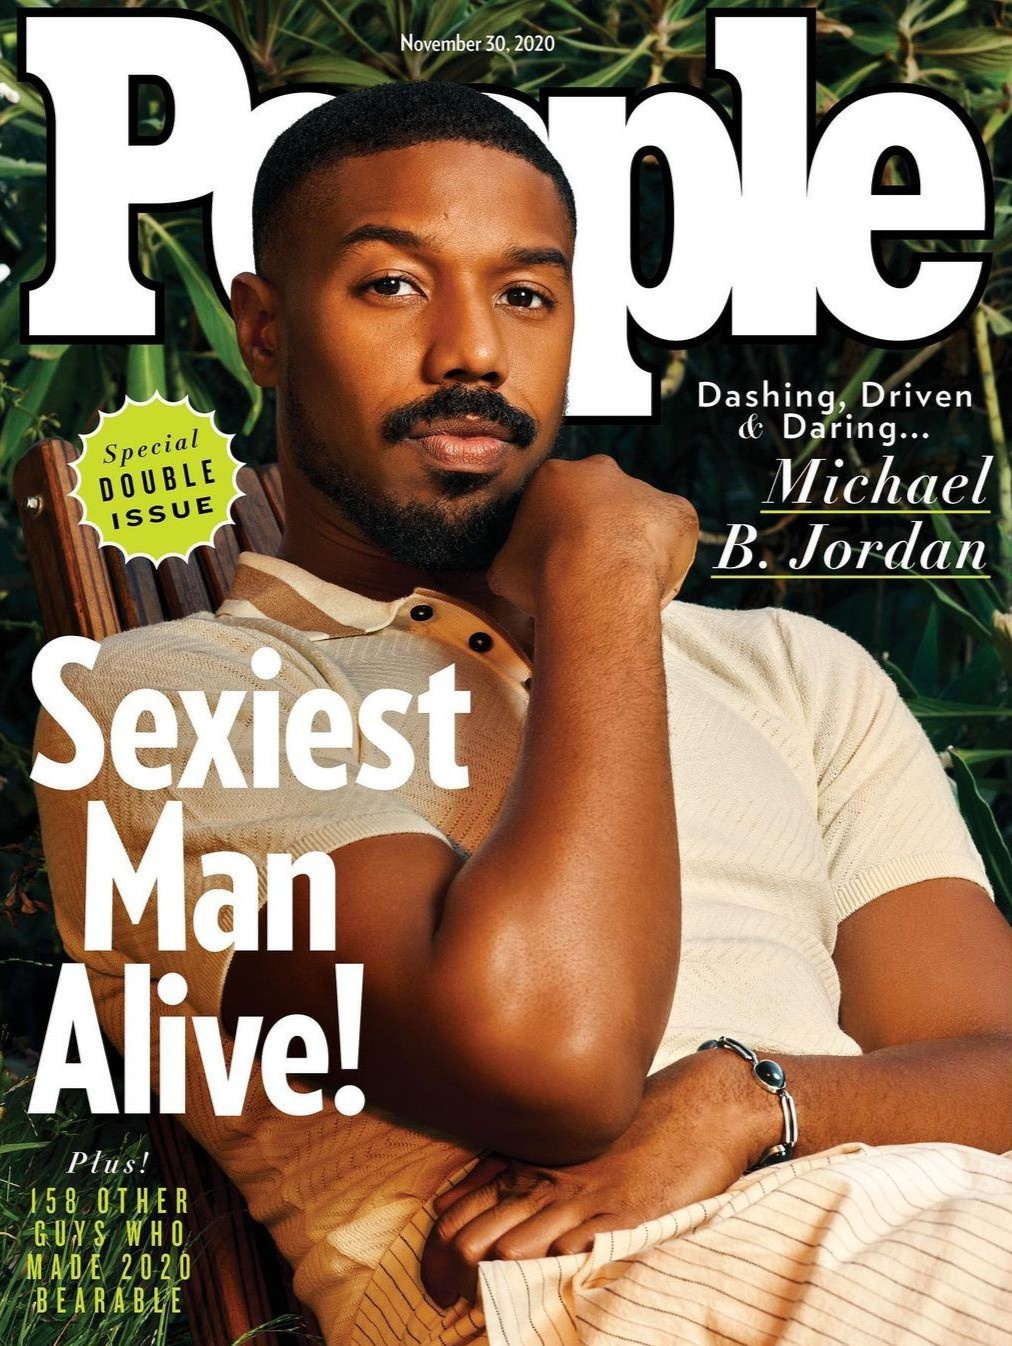 Michael B. Jordan được tờ People công bố là người đàn ông quyến rũ nhất năm 2020.